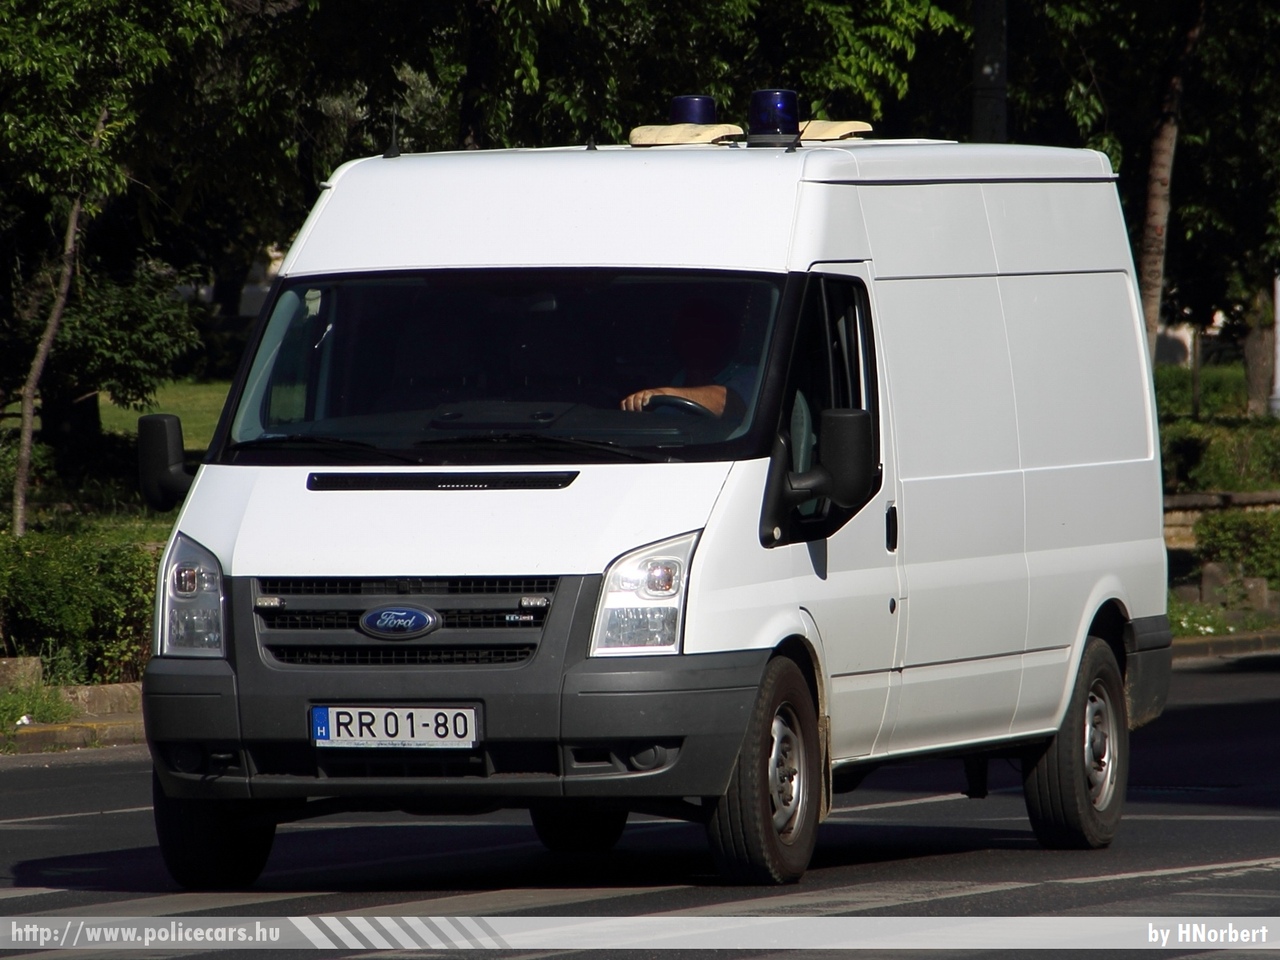 Ford Transit, Országos Büntetés-végrehajtási Intézet, fotó: HNorbert
Keywords: BV RR01-80 BV magyar Magyarország Hungary hungarian prison  Büntetés-végrehajtás